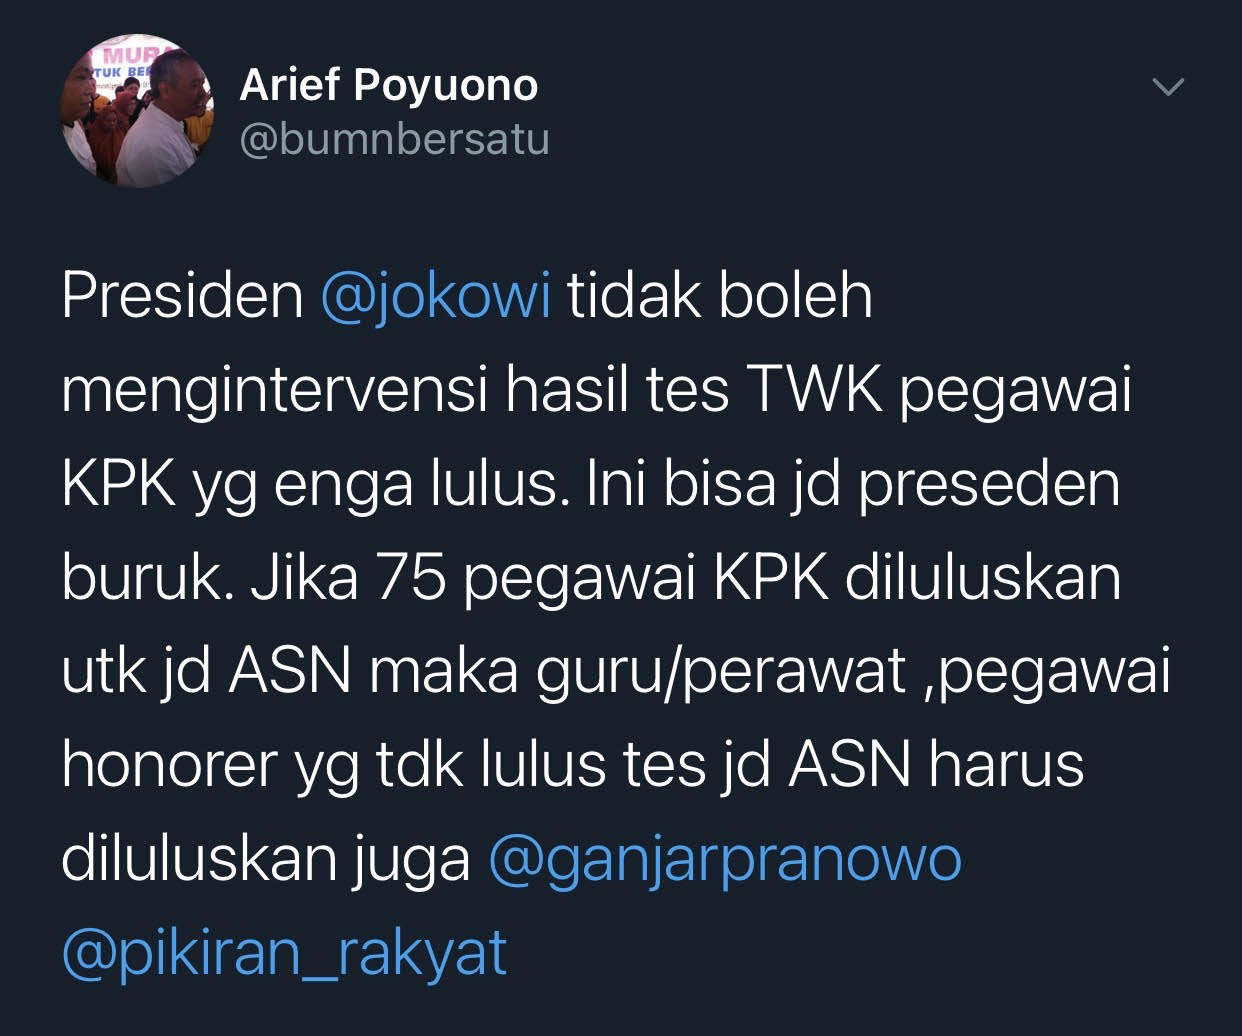 Cuitan Arief Poyuono yang merespons pernyataan Presiden Jokowi soal 75 pegawai yang diberhentikan karena tidak lolos TWK.